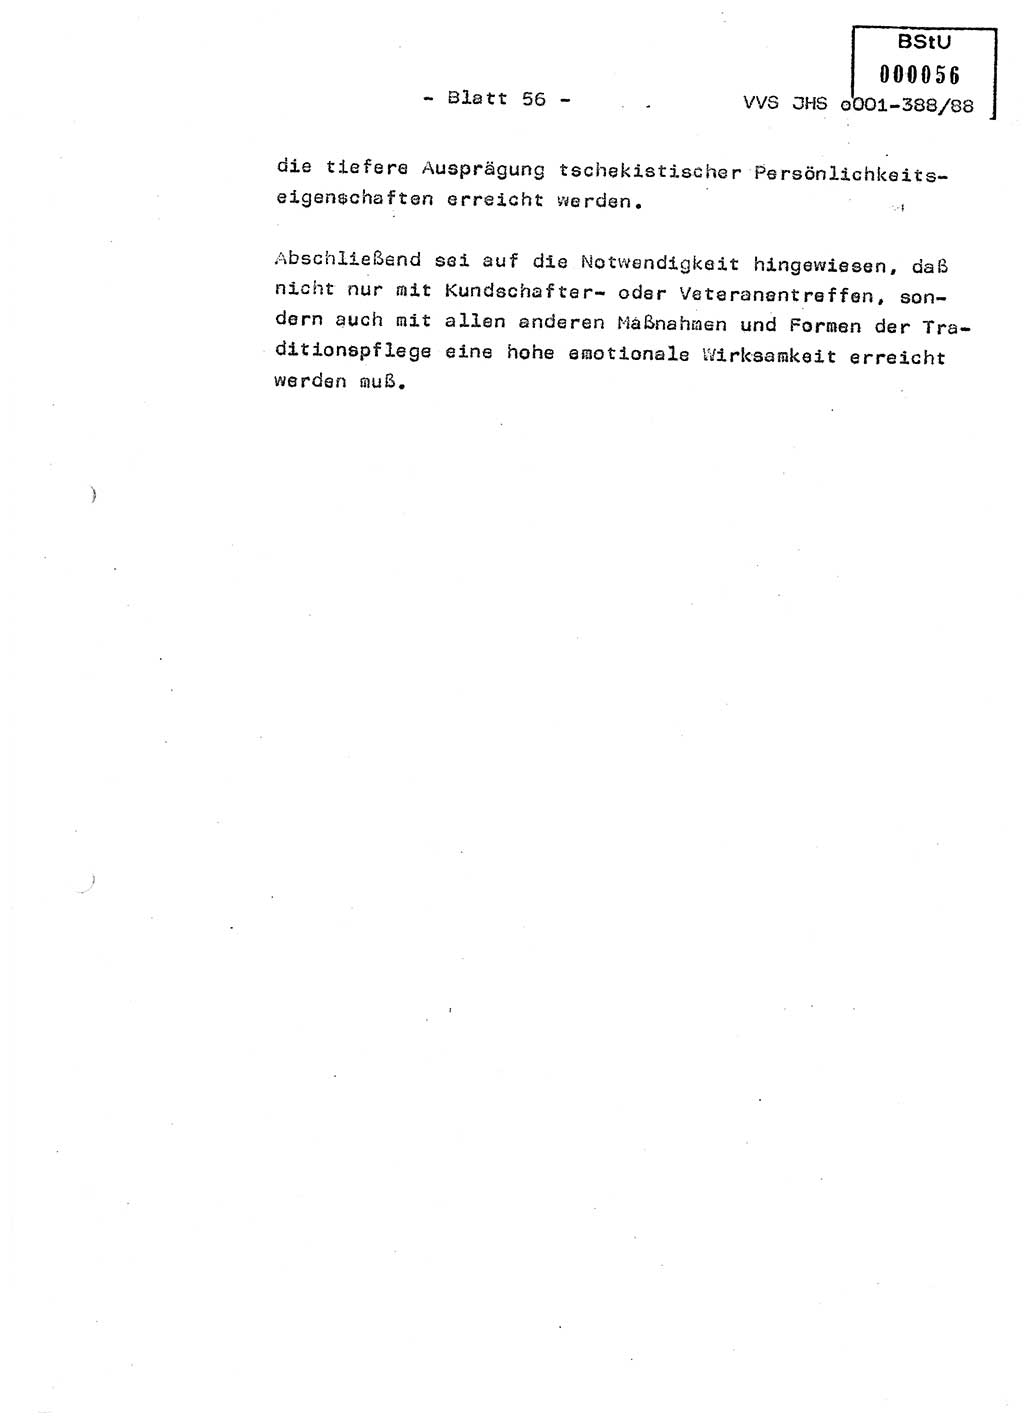 Diplomarbeit Hauptmann Heinz Brixel (Abt. ⅩⅣ), Ministerium für Staatssicherheit (MfS) [Deutsche Demokratische Republik (DDR)], Juristische Hochschule (JHS), Vertrauliche Verschlußsache (VVS) o001-388/88, Potsdam 1988, Blatt 56 (Dipl.-Arb. MfS DDR JHS VVS o001-388/88 1988, Bl. 56)